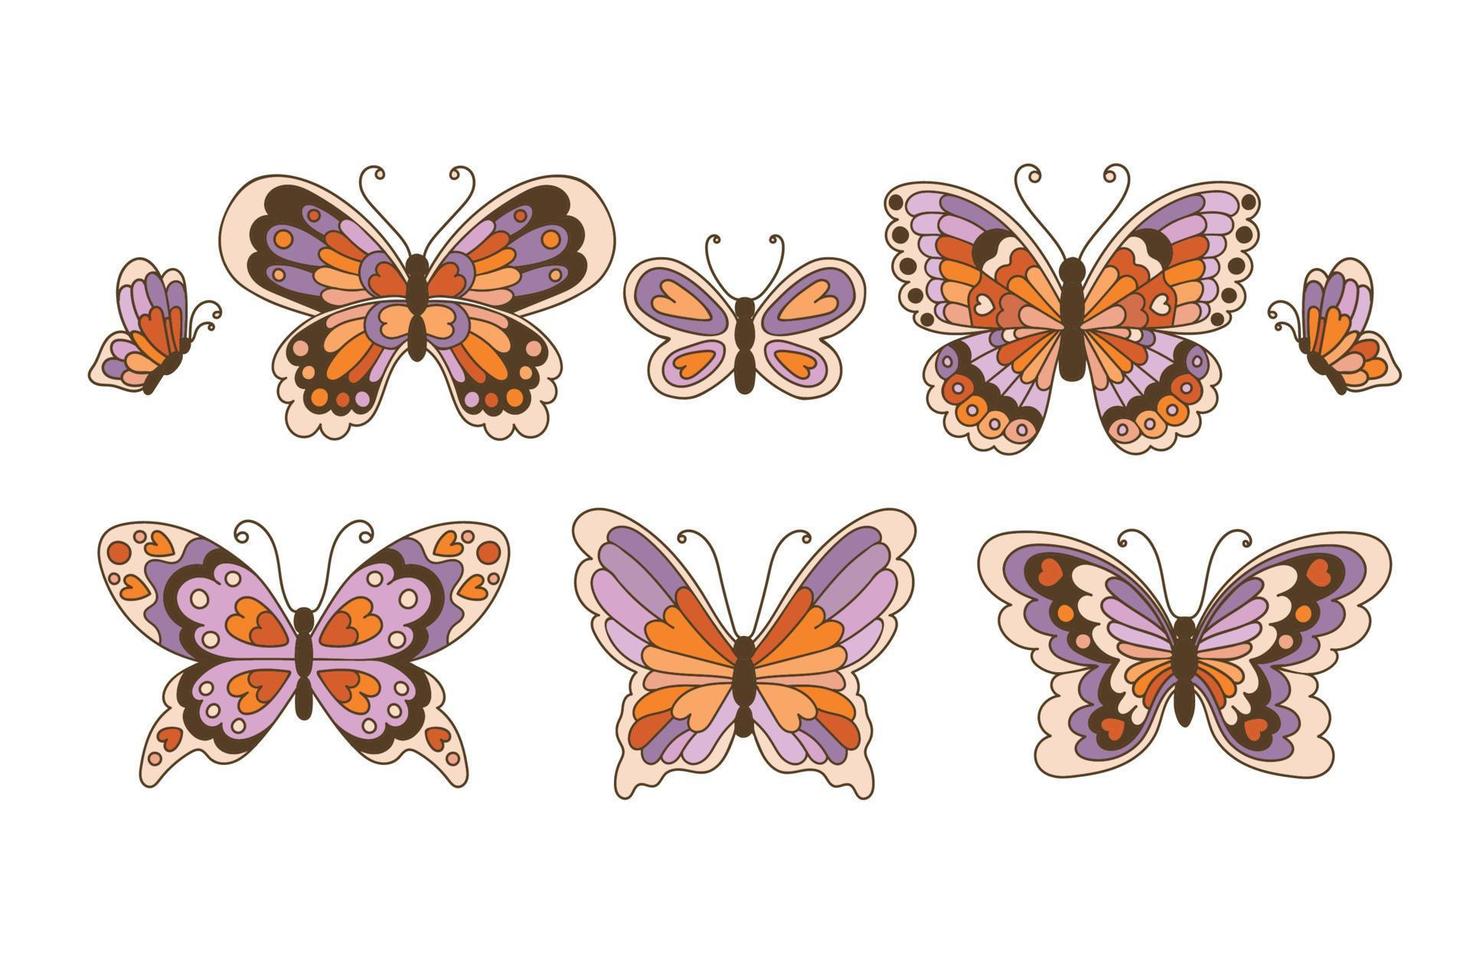 retro Jaren 60 jaren 70 hippie zomer groovy vlinder reeks element hand- getrokken vector illustratie.